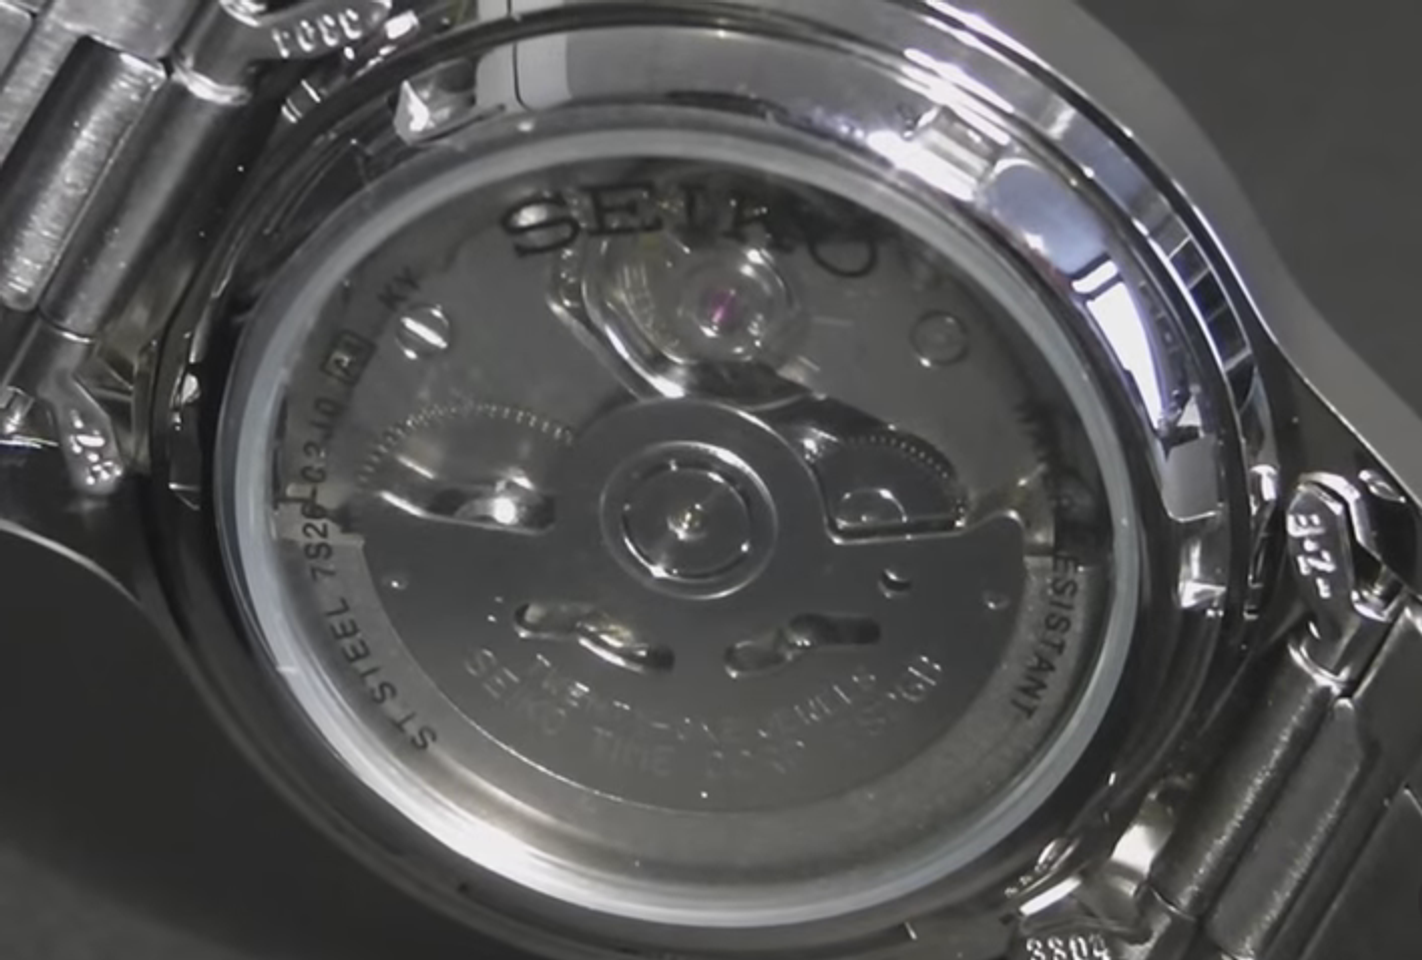 Đồng hồ Seiko SNK809K1 có thiết kế lộ caseback giúp người dùng dễ dàng quan sát hoạt động phức tạp bên trong cỗ máy